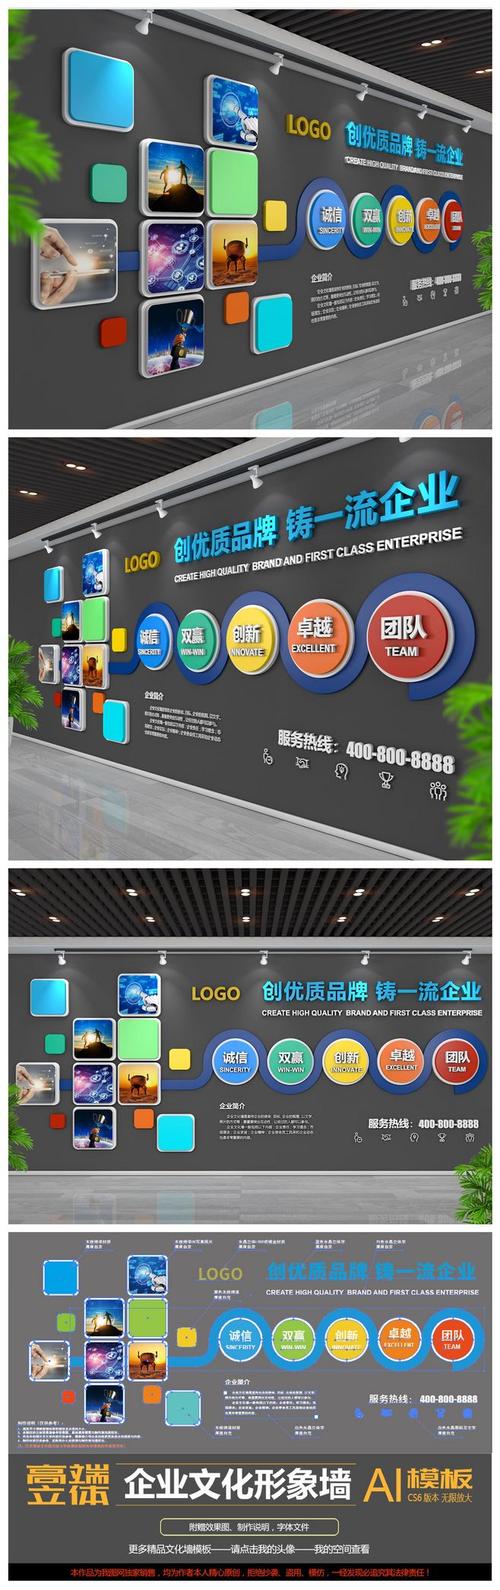 象征家庭和睦微信名字宝博体育·(中国)官网app下载(能代表家庭和睦的名字)